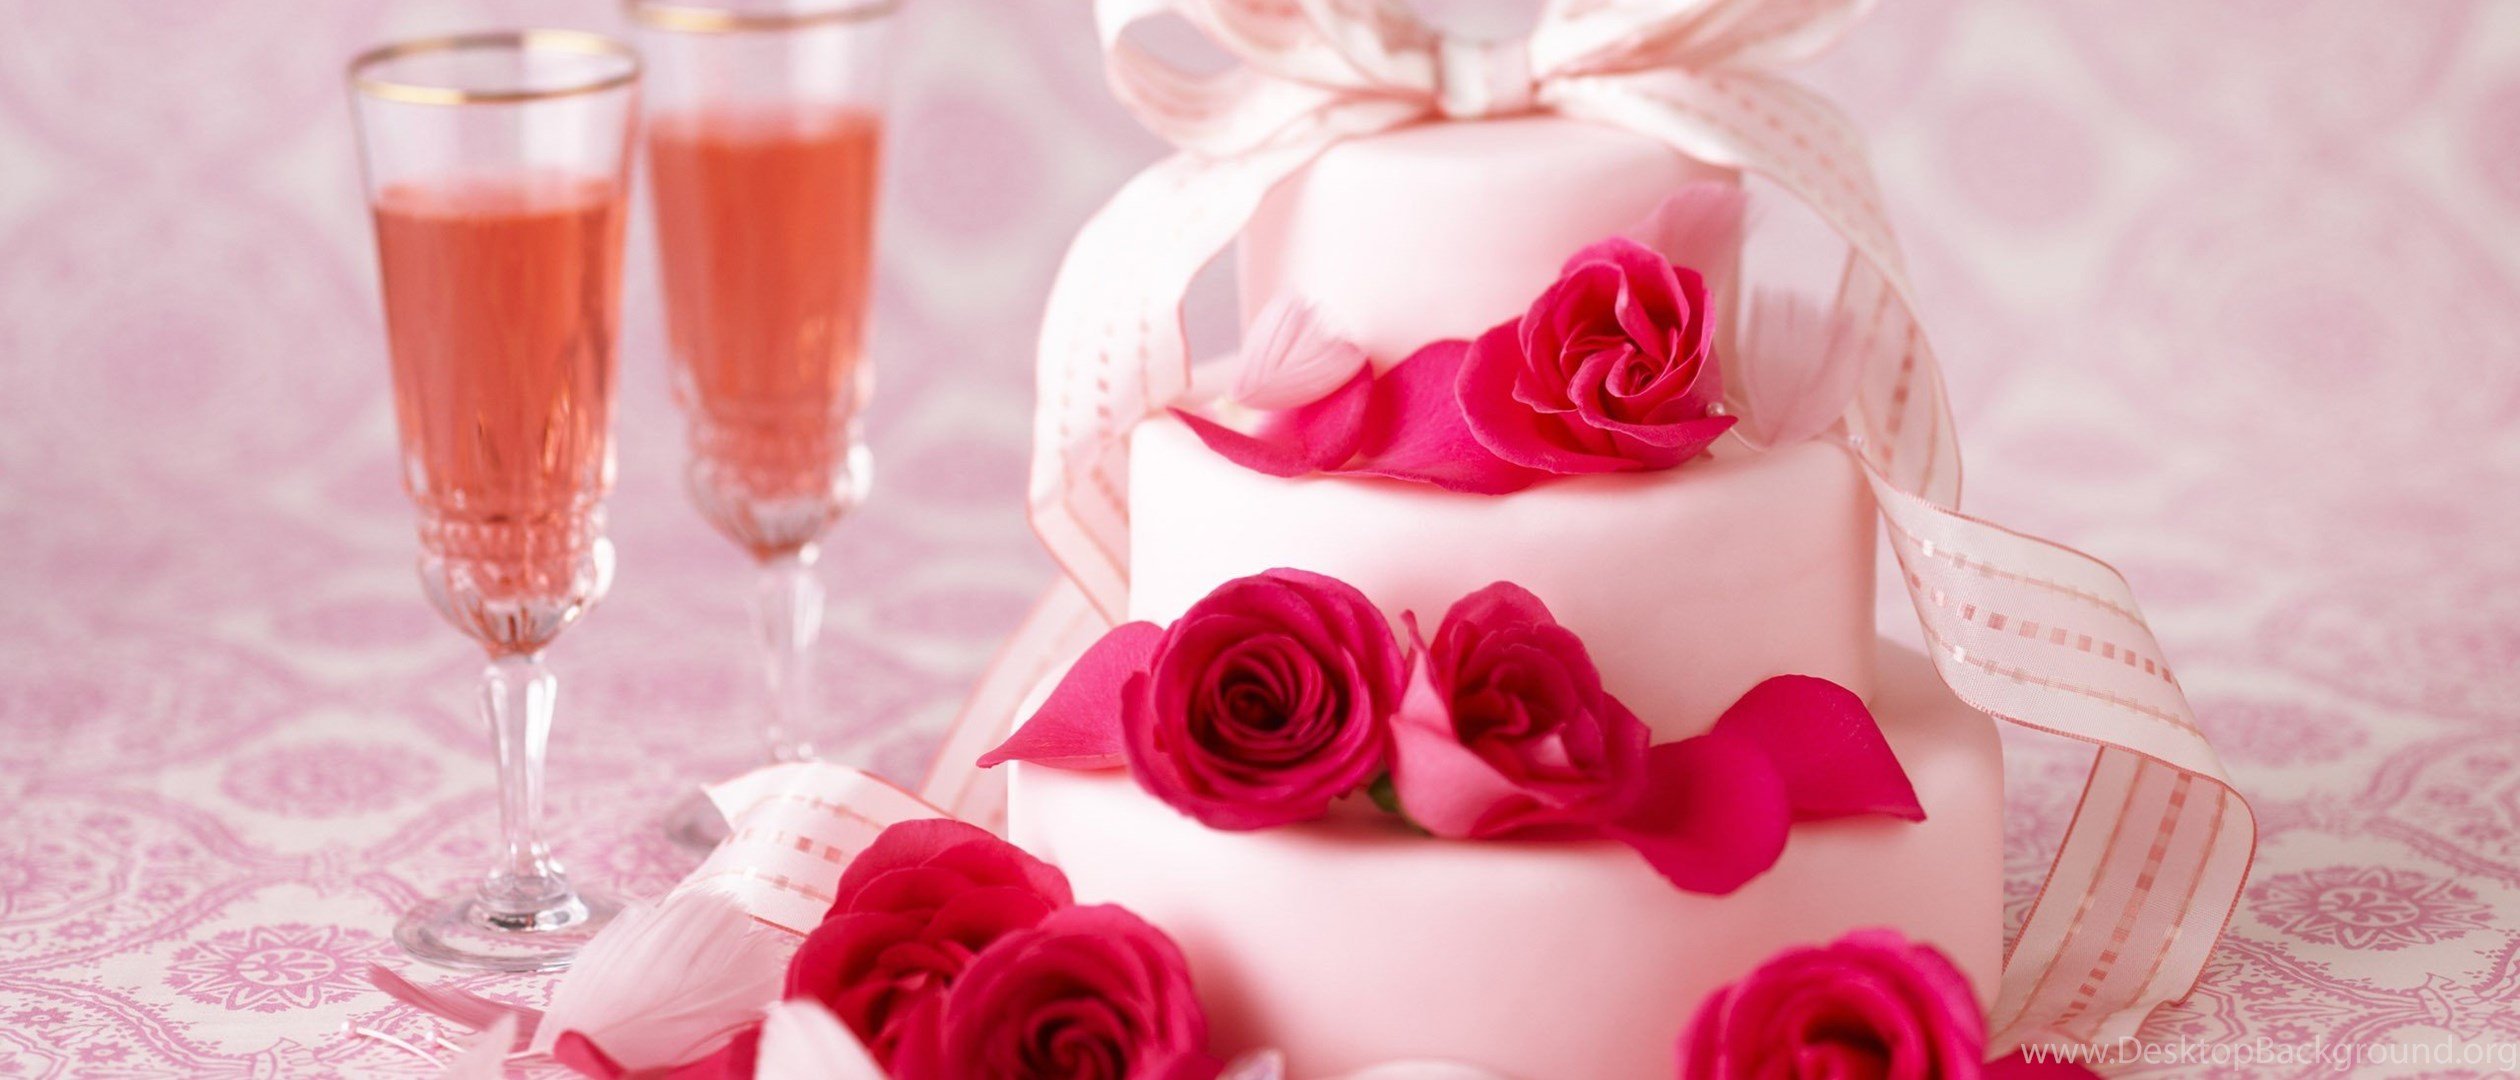 Поздравление с днем свадьбы 17. Розовая свадьба годовщина. Розовая свадьба открытки. 17 Лет свадьбы. Розовая свадьба 17 лет.